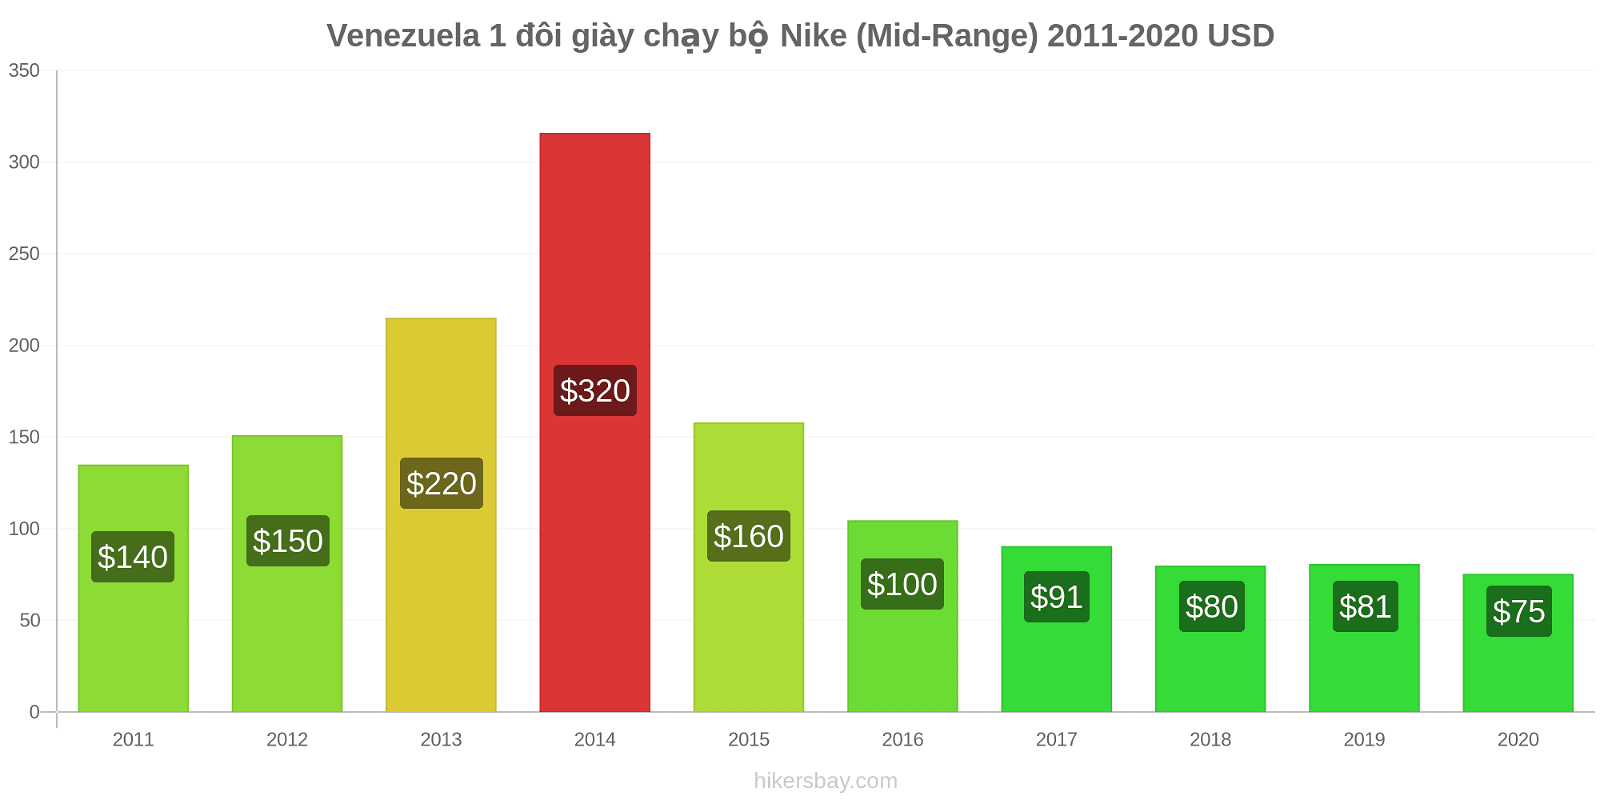 Venezuela thay đổi giá 1 đôi giày chạy bộ Nike (Mid-Range) hikersbay.com